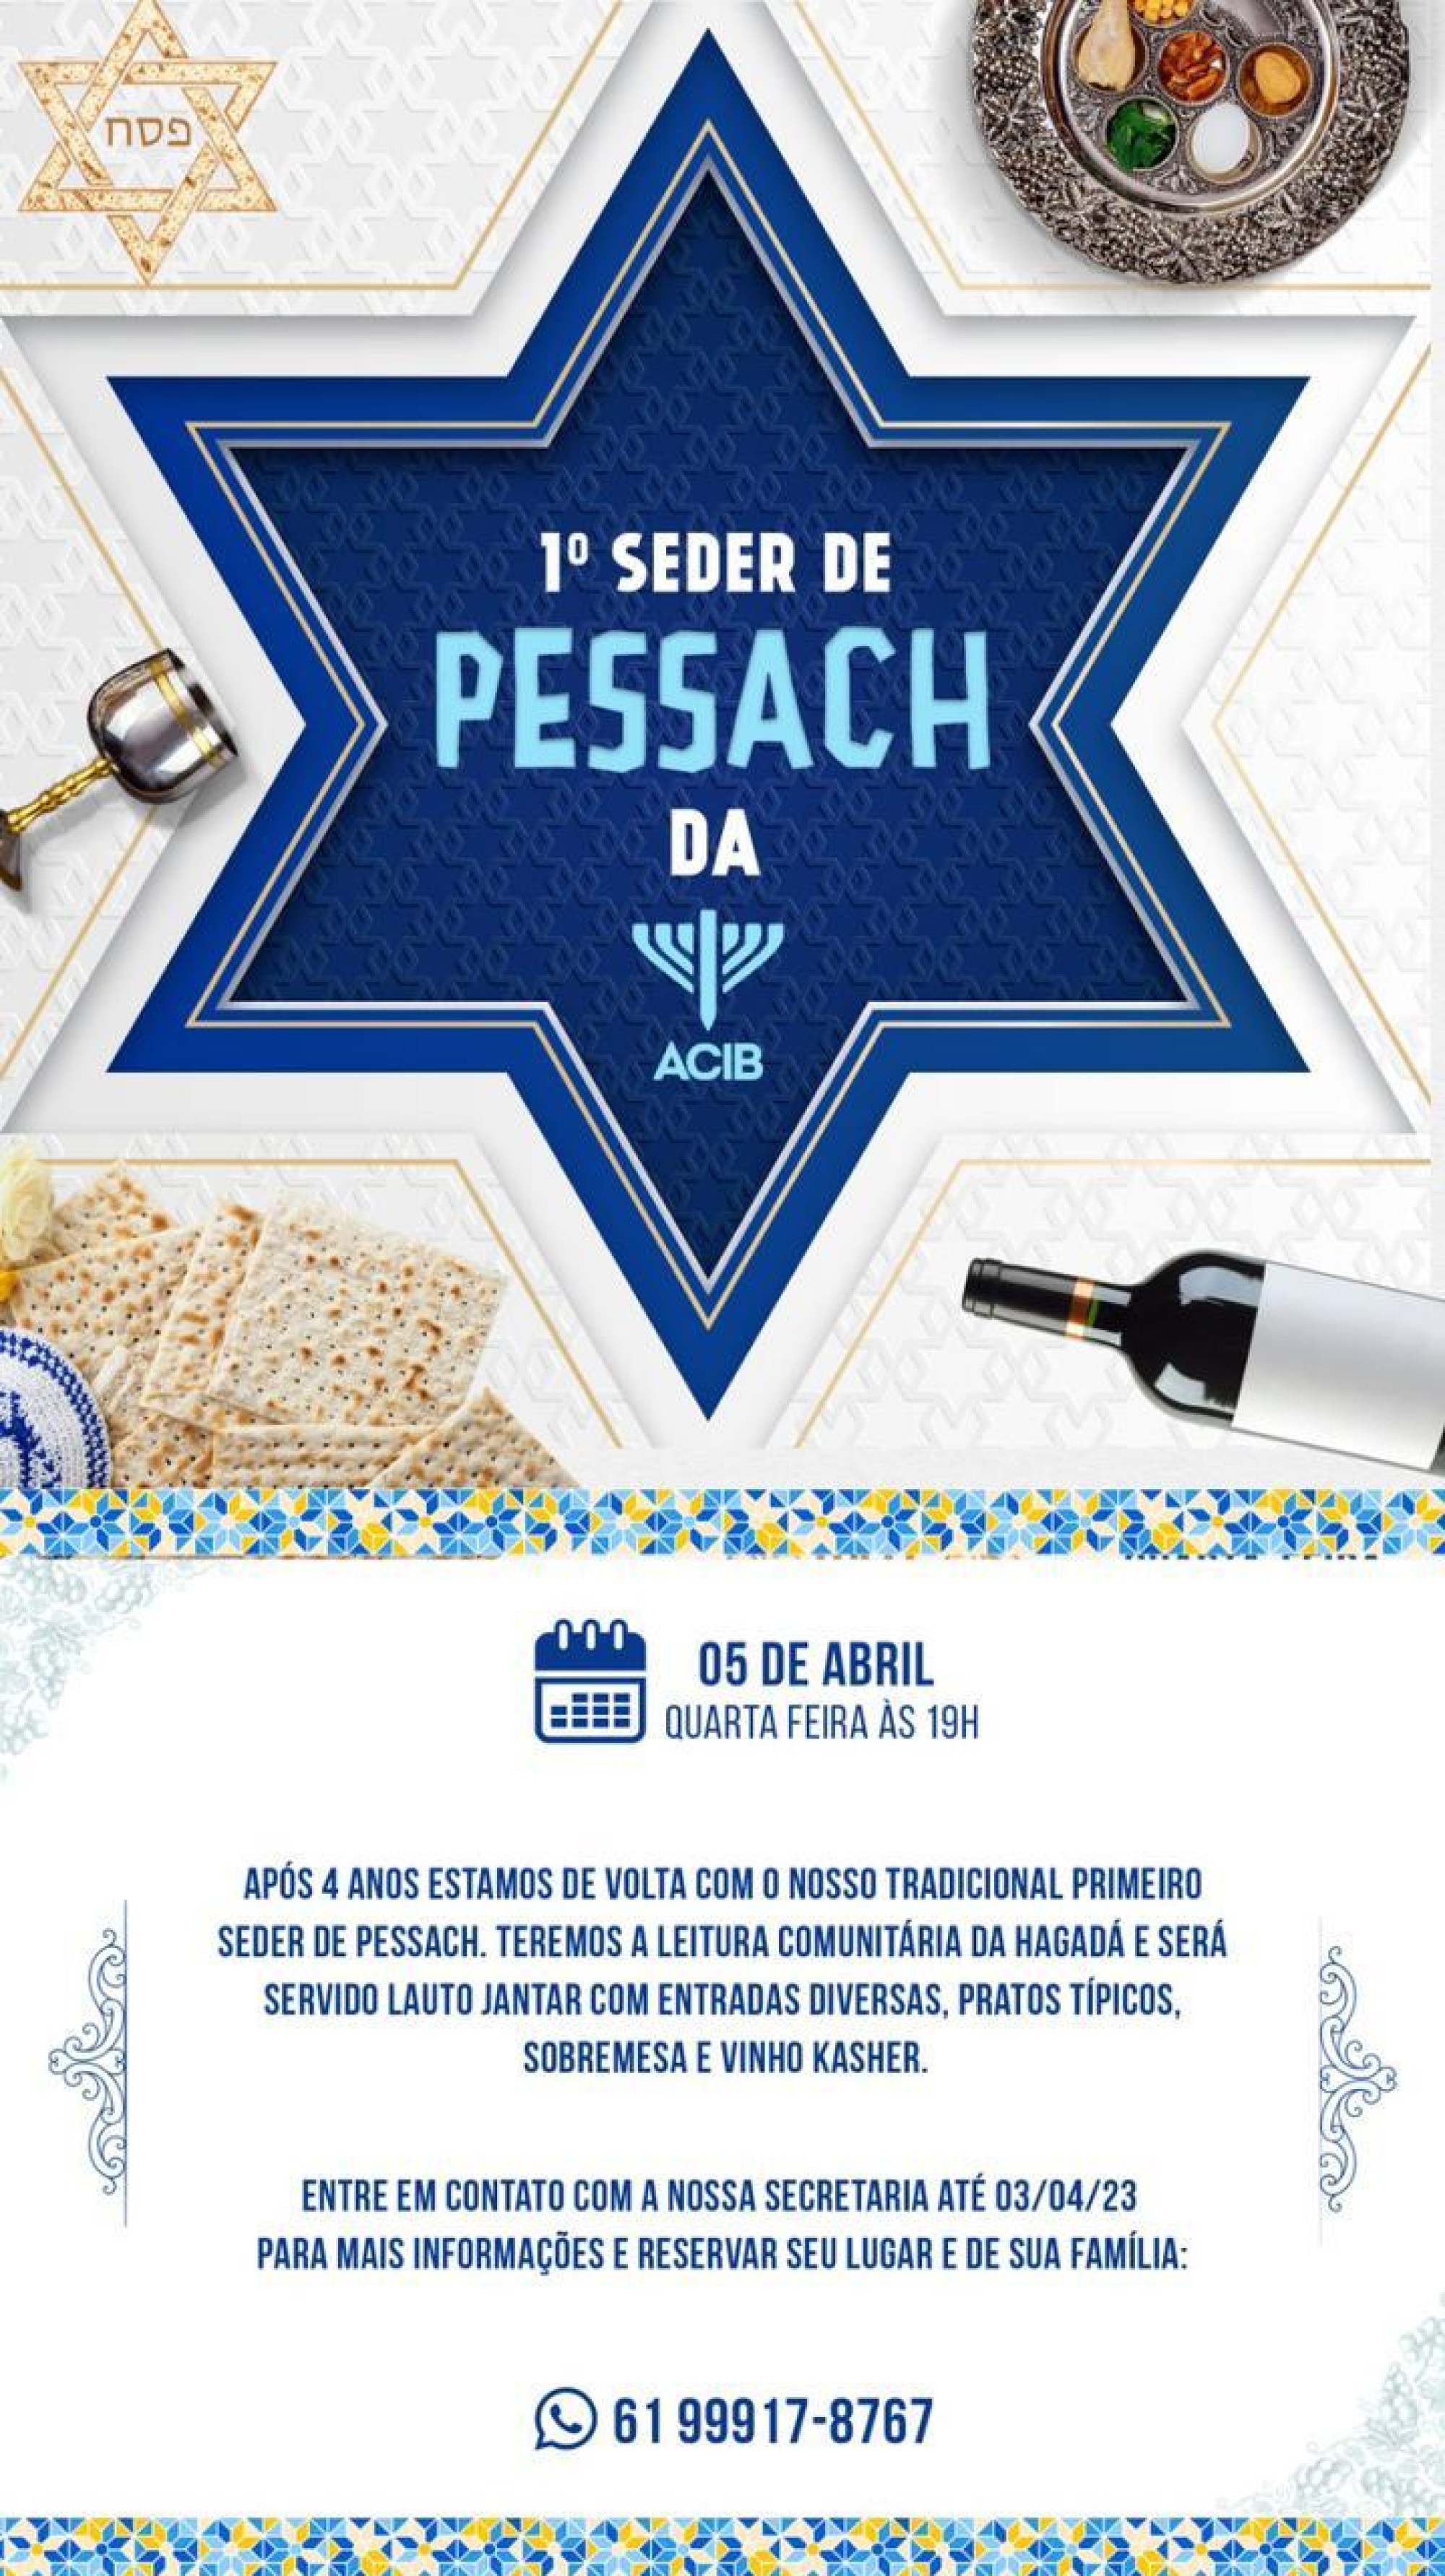 Federações israelitas de vários estados brasileiros divulgam programação de Pessach - Fundada em 1948, a CONIB – Confederação Israelita do Brasil é o órgão de representação e coordenação política da comunidade judaica brasileira. 